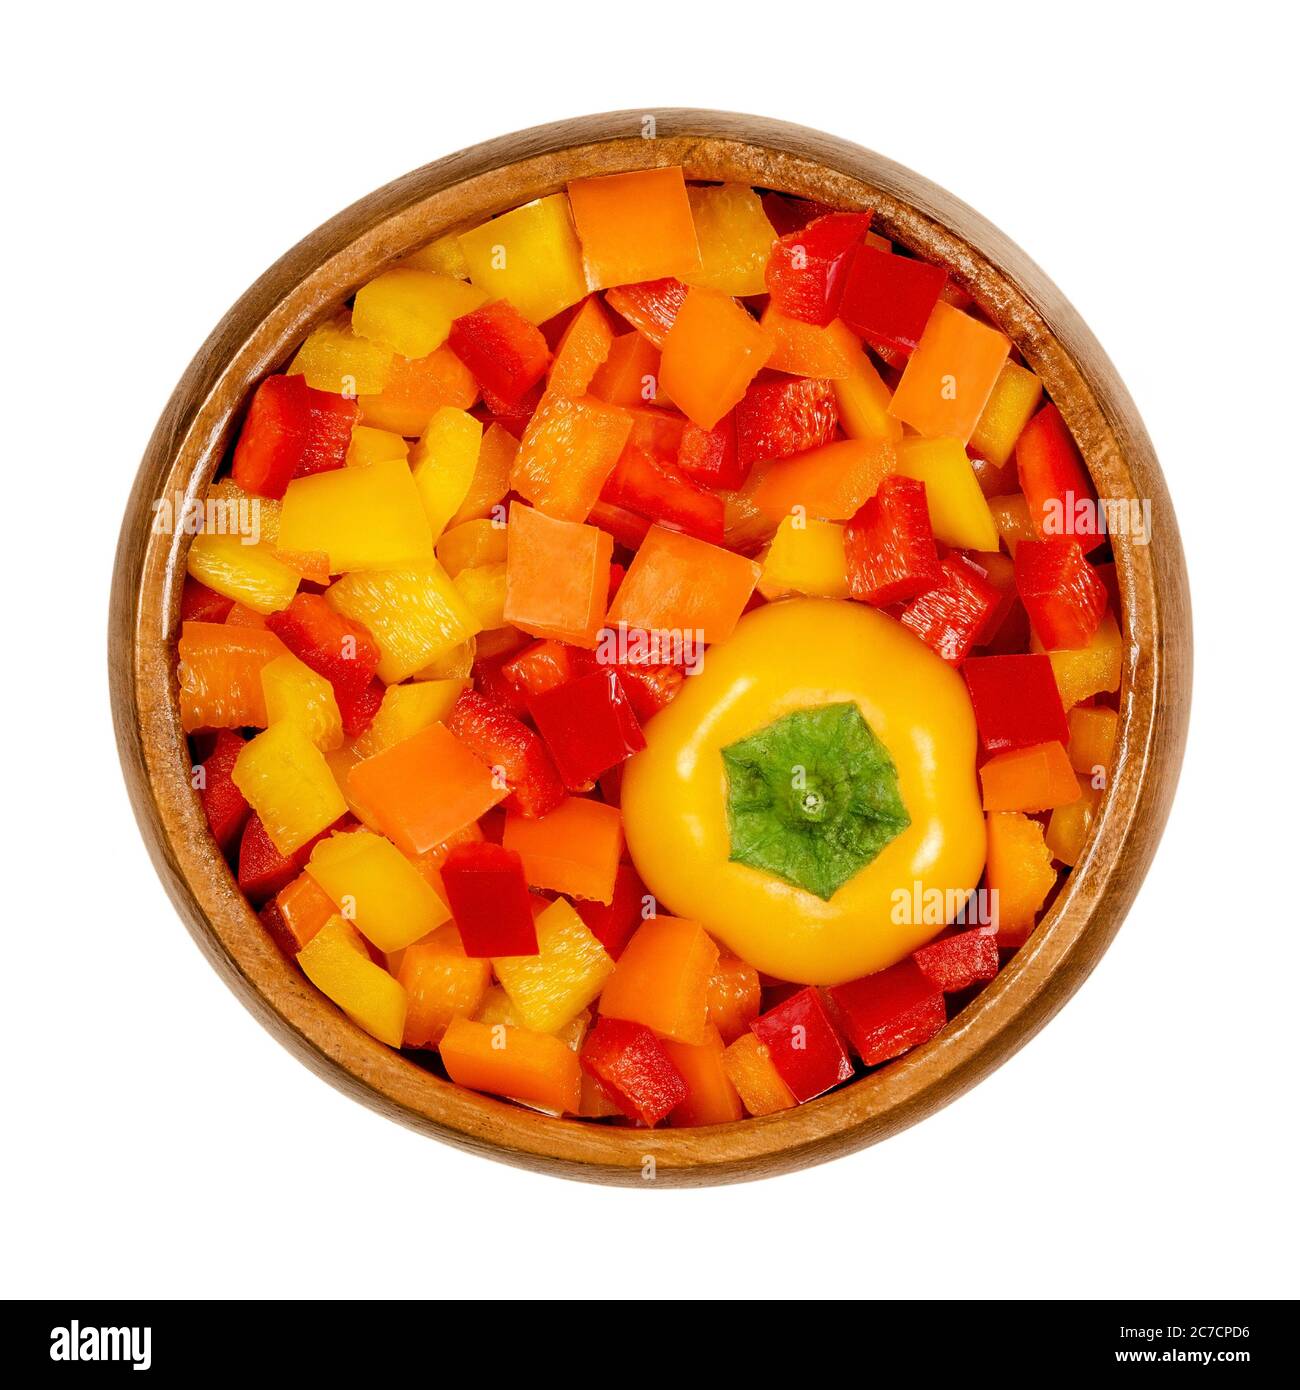 Cabeza de pimiento y vainas cortadas en un tazón de madera. Pimiento dulce, capsicum, también pimentón, cortado en chips de colores. Frutas frescas amarillas, naranjas y rojas. Foto de stock